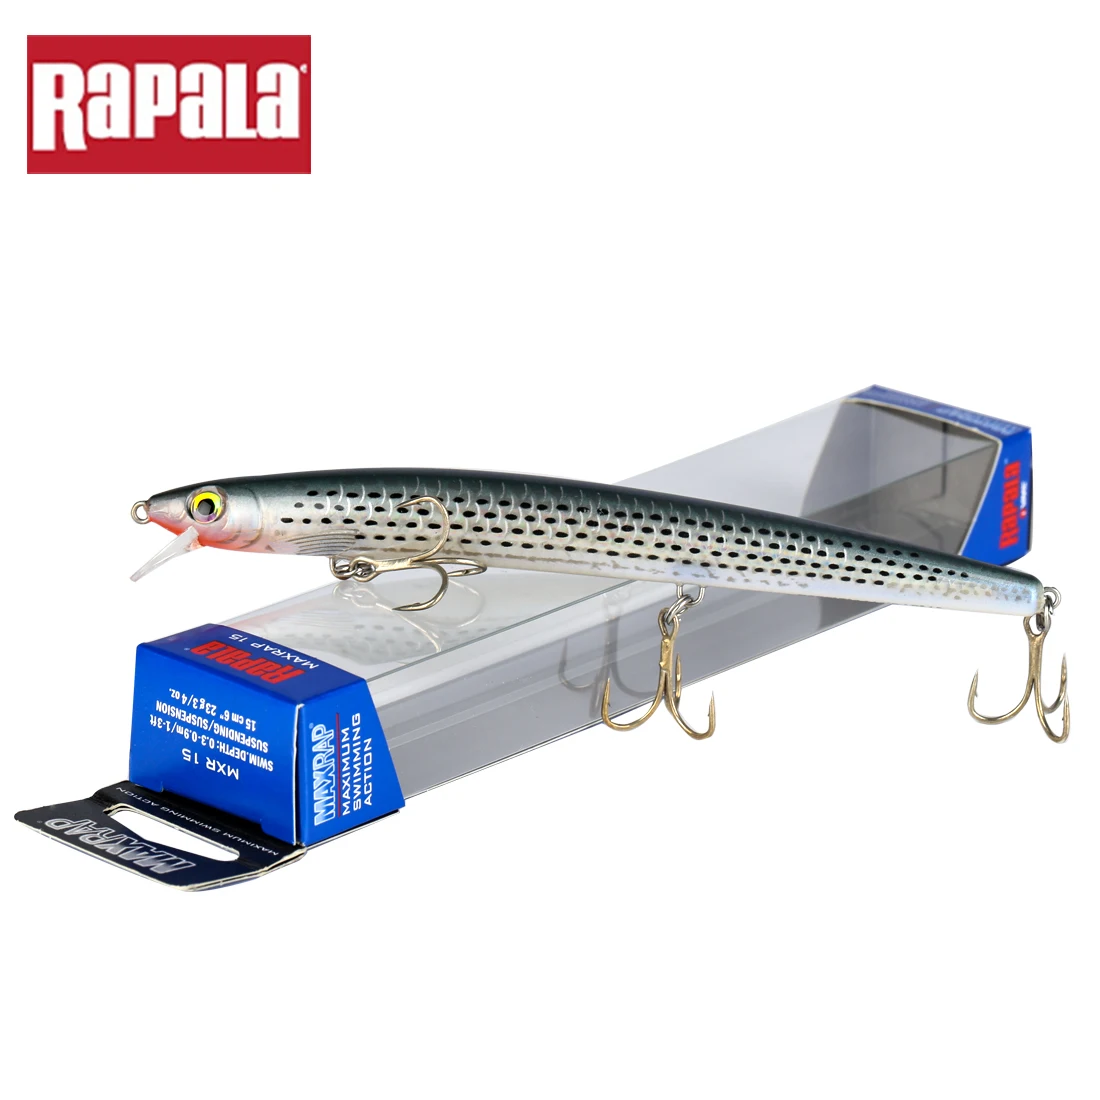 RAPALA DT16 RPR07 MXR15 Θέλγητρο Αλιείας Δέλεαρ Τεχνητή Σκληρό Δόλωμα Ζωντανό 3D Μάτια Wobbler αλμυρού νερού Αλιεία Αντιμετώπιση